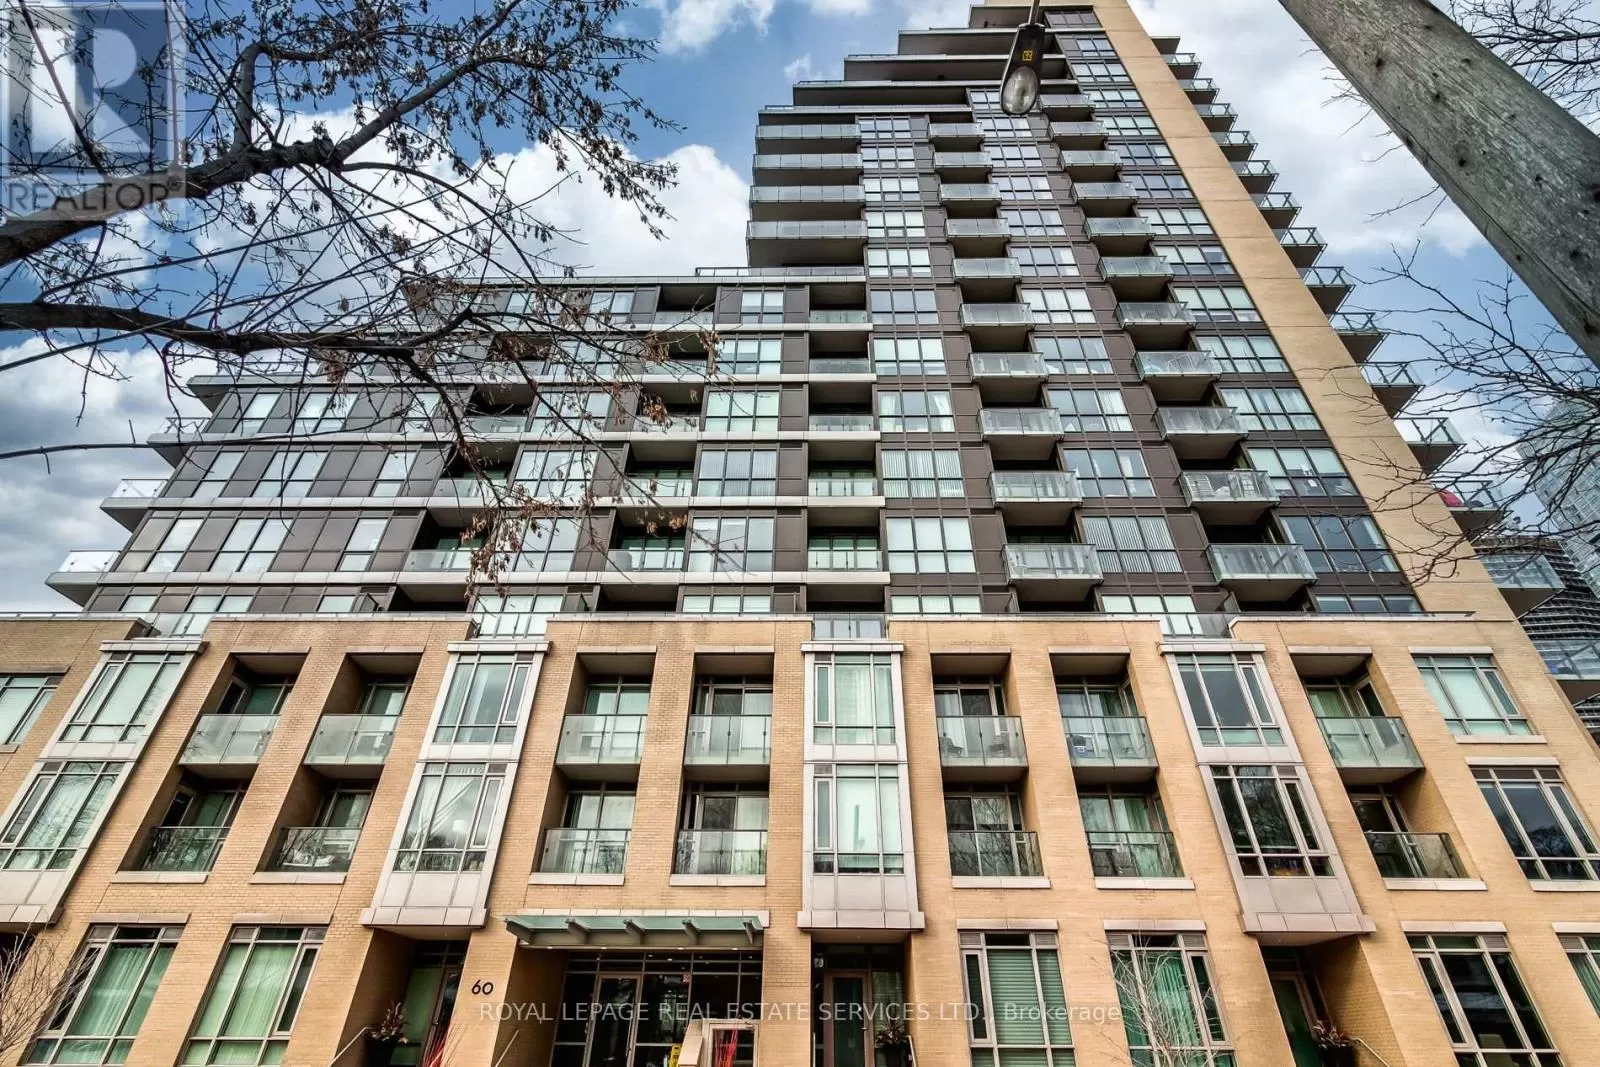 Apartment for rent: 615 - 60 Berwick Avenue, Toronto, Ontario M5P 1H1